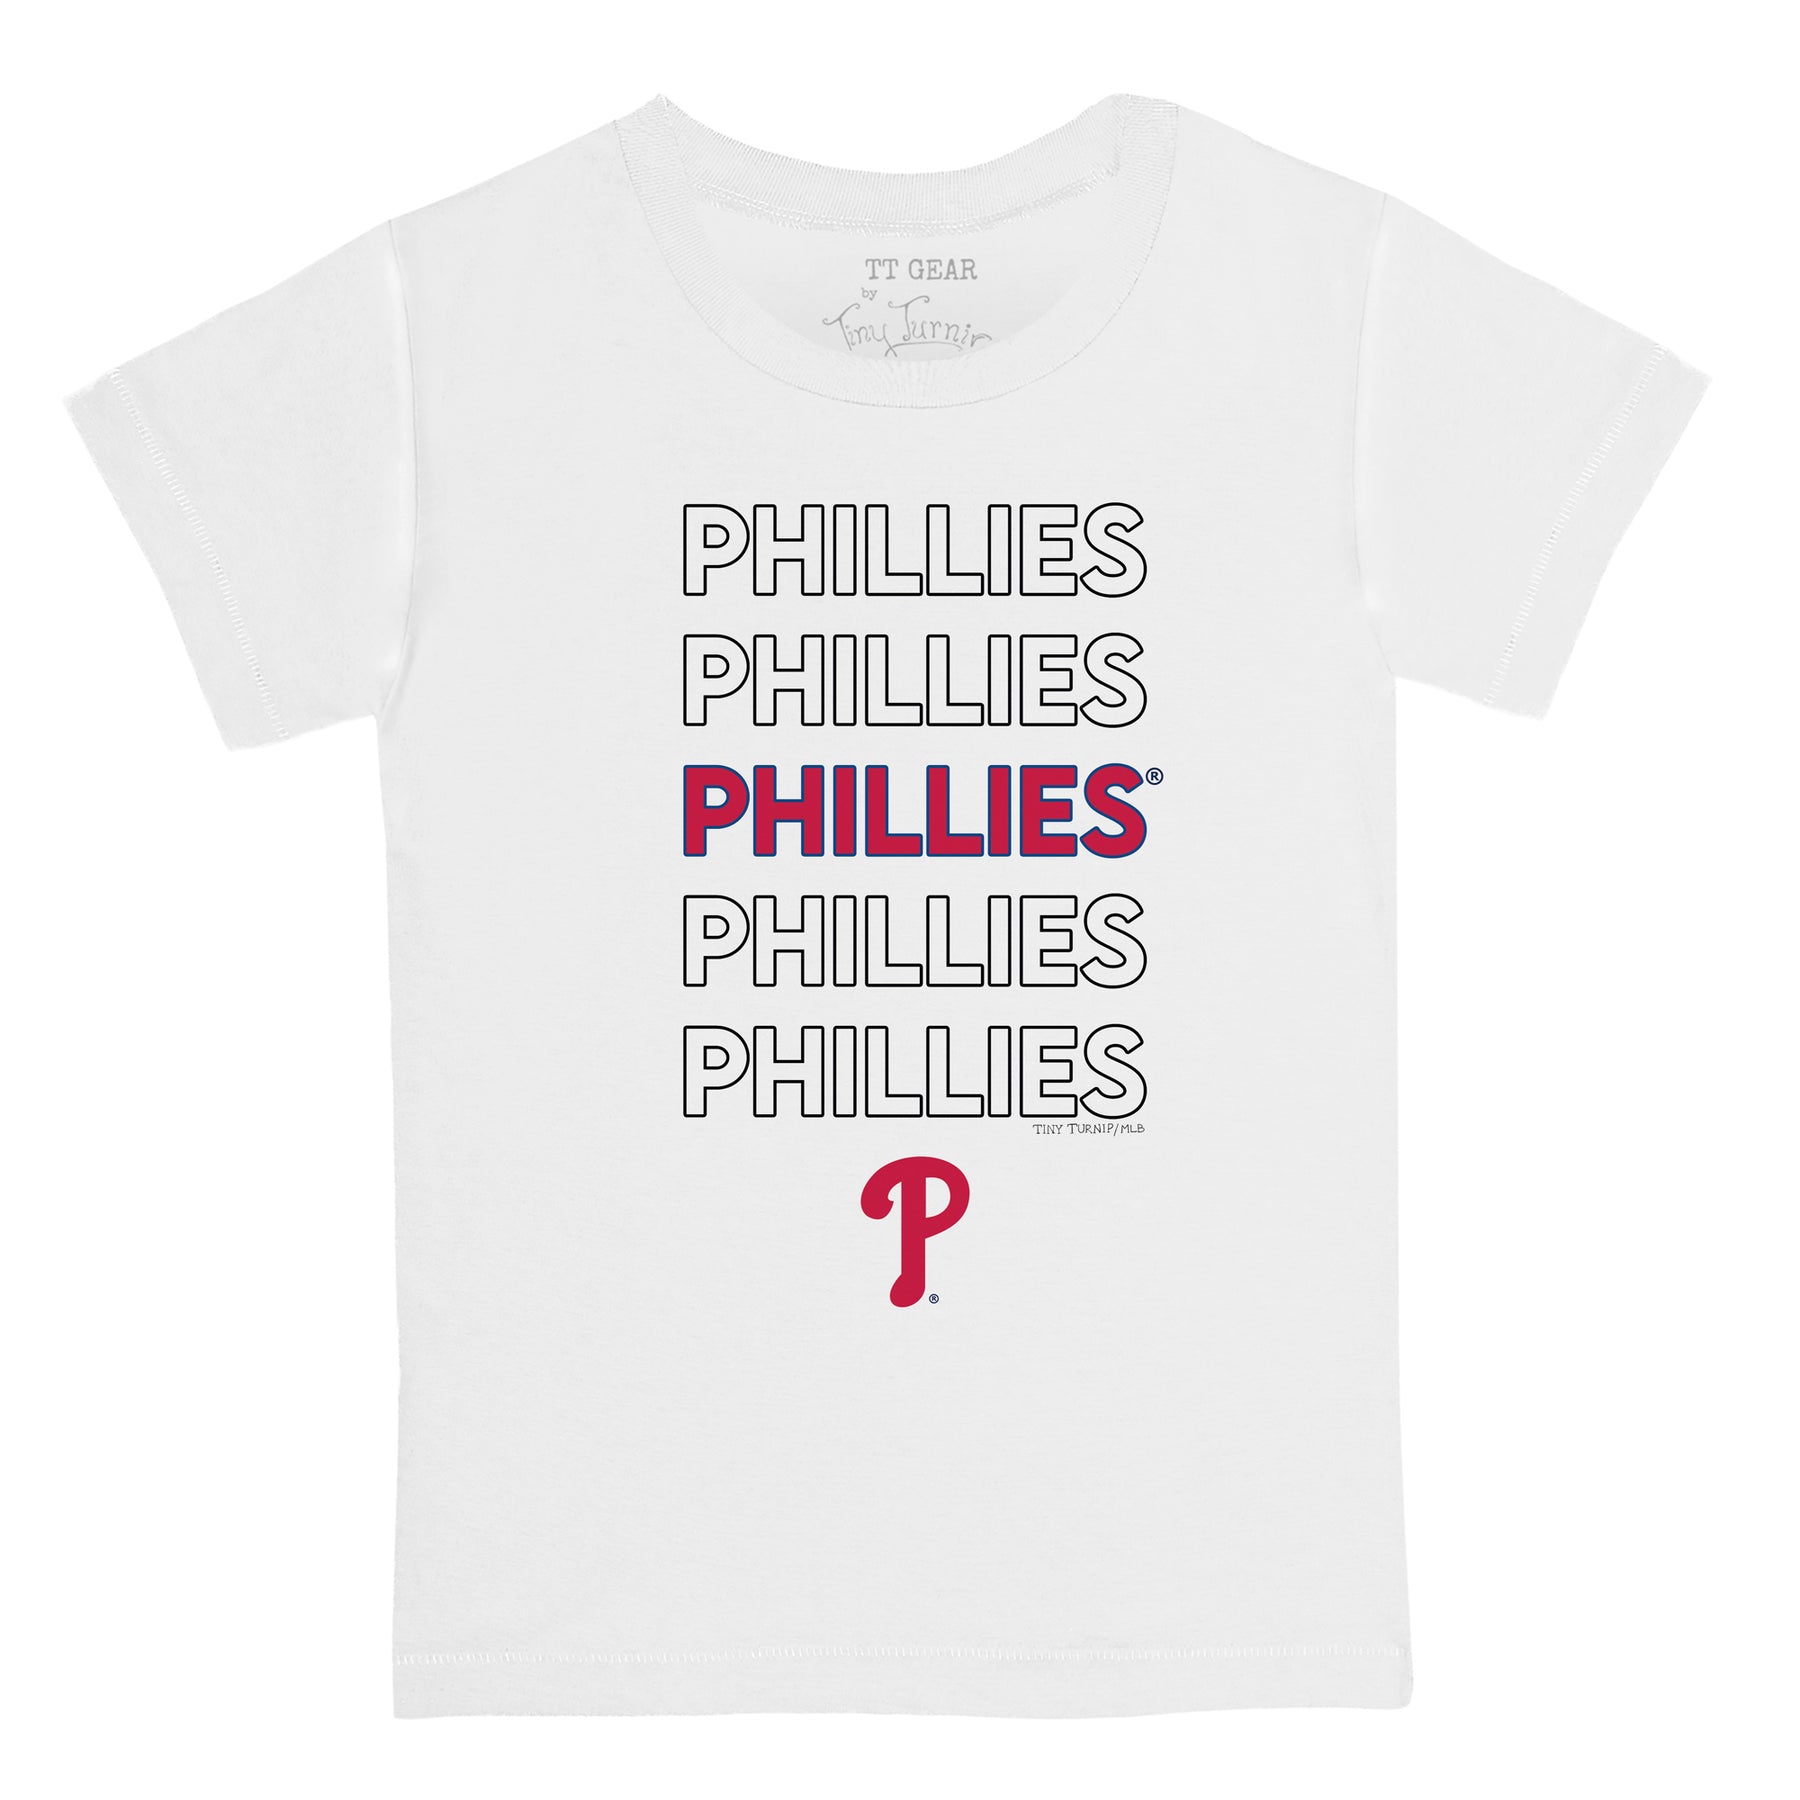 Philadelphia Phillies Tiny Turnip Youth Dirt Ball T-Shirt - White